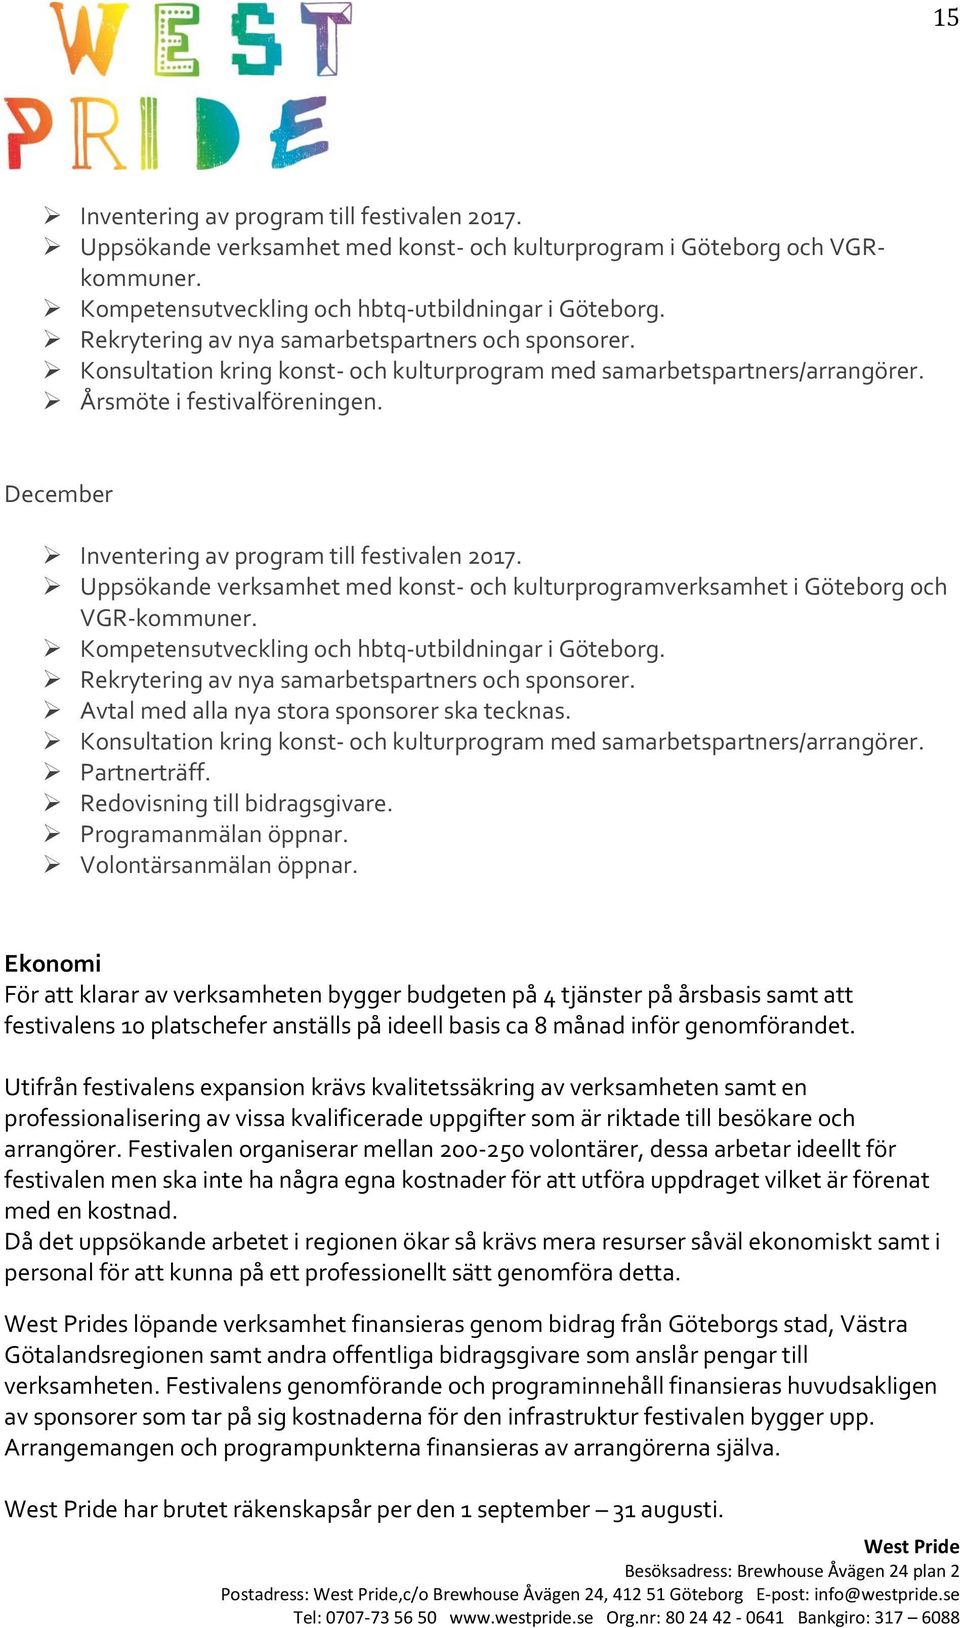 Uppsökande verksamhet med konst- och kulturprogramverksamhet i Göteborg och VGR-kommuner. Kompetensutveckling och hbtq-utbildningar i Göteborg. Rekrytering av nya samarbetspartners och sponsorer.